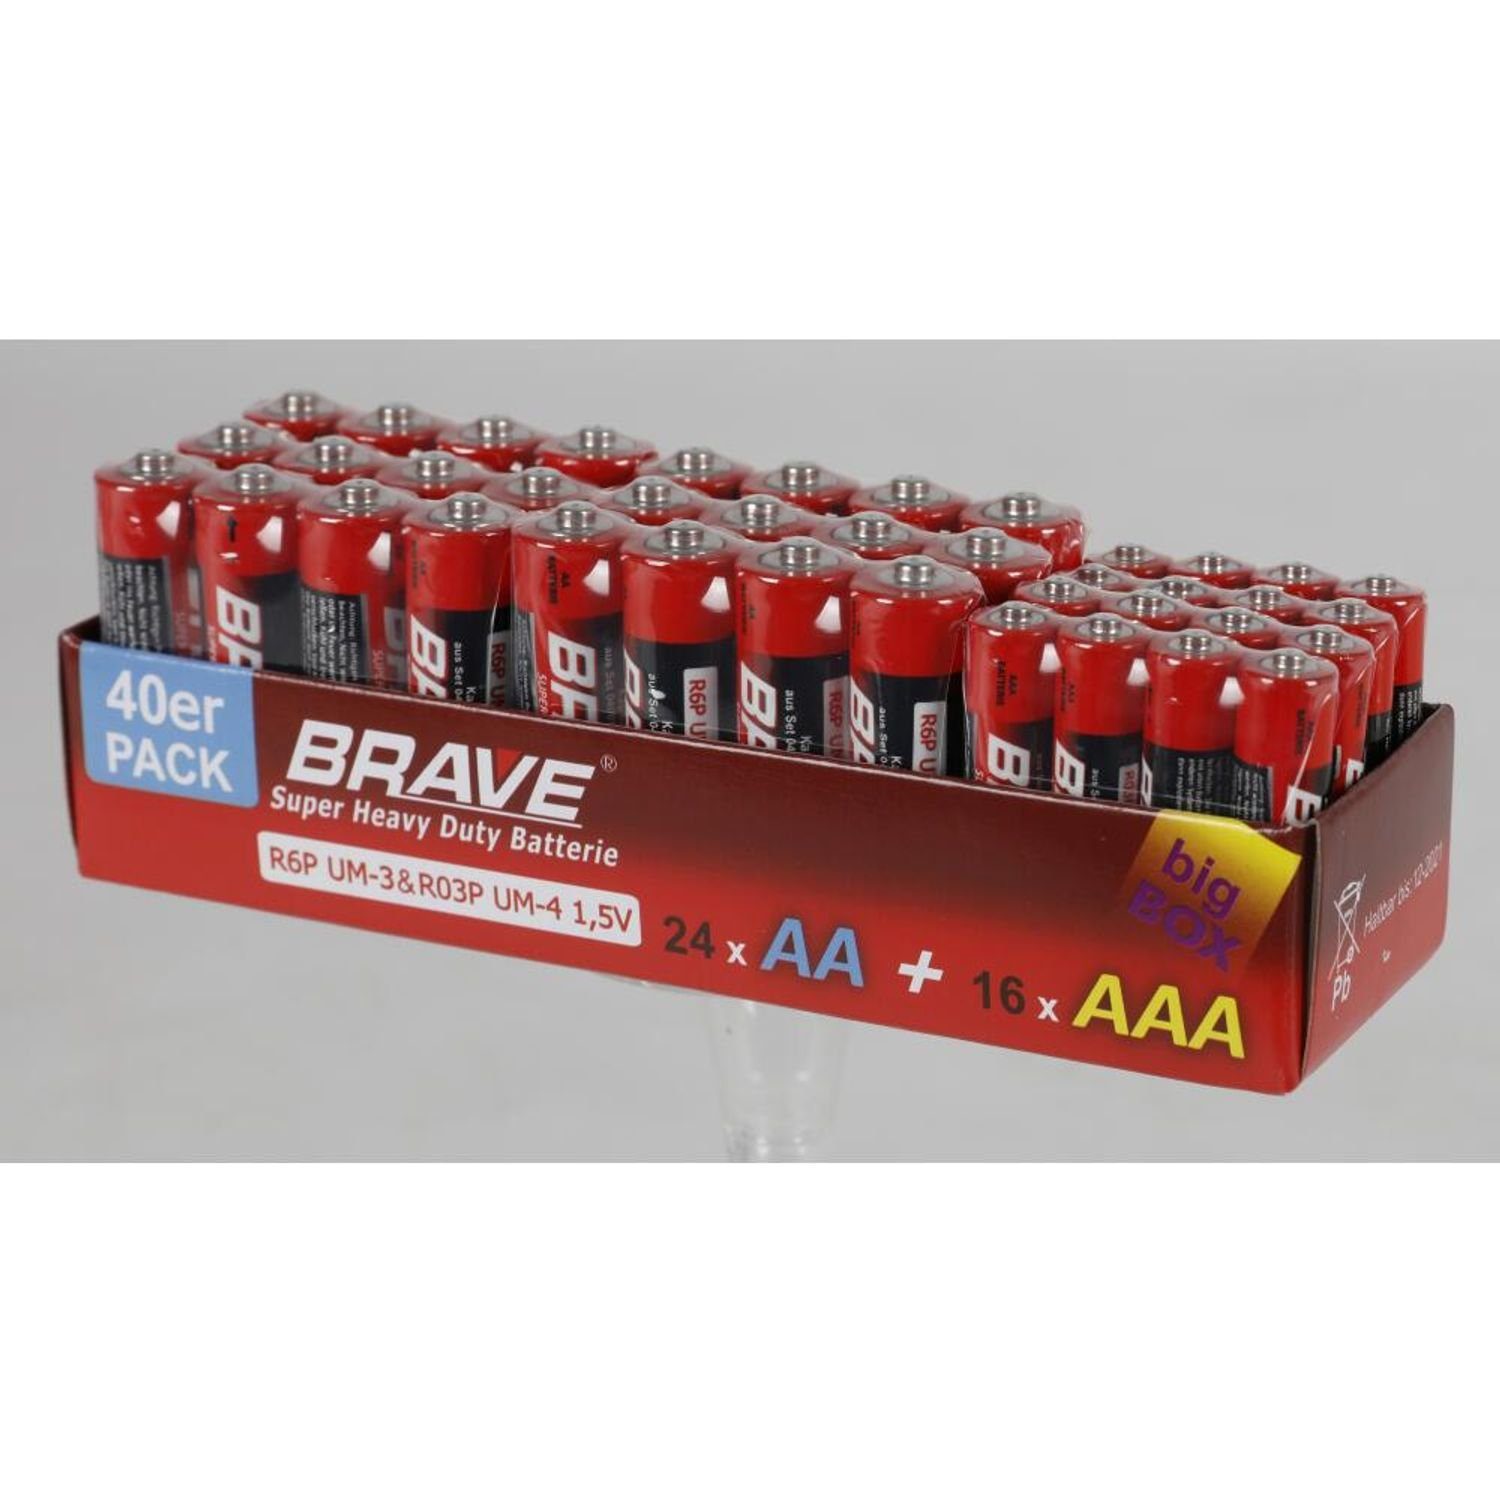 Brave & Batterie, Großpackung St) Stück 40er-Pack (960 AAA 960 BURI Batterien 24x AA